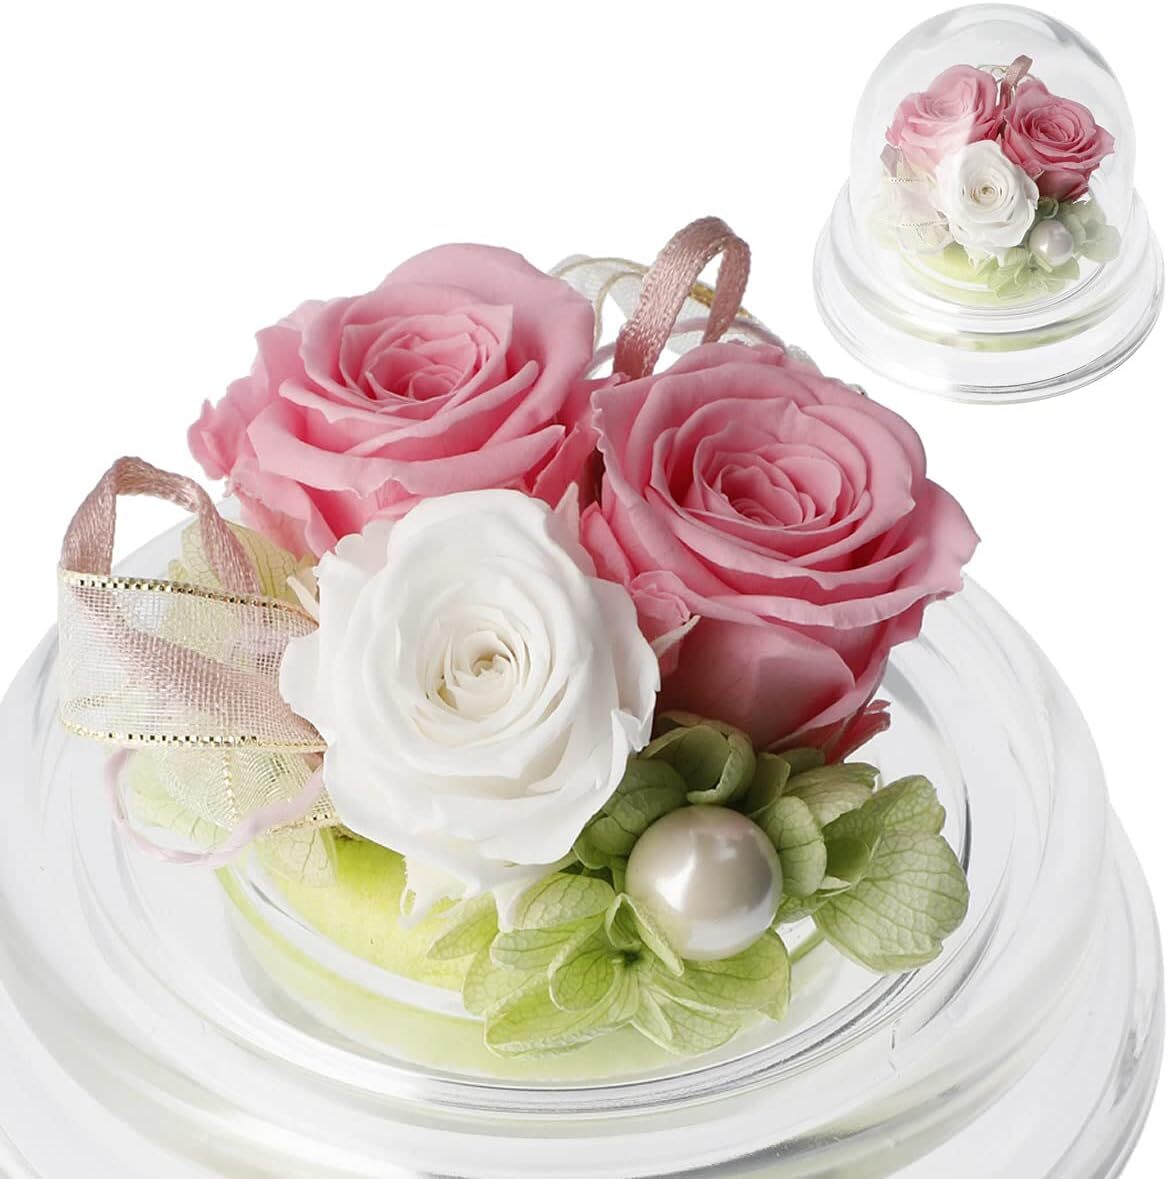  compact консервированный цветок подарок комплект po M ( розовый ) бесплатный подарок установка 